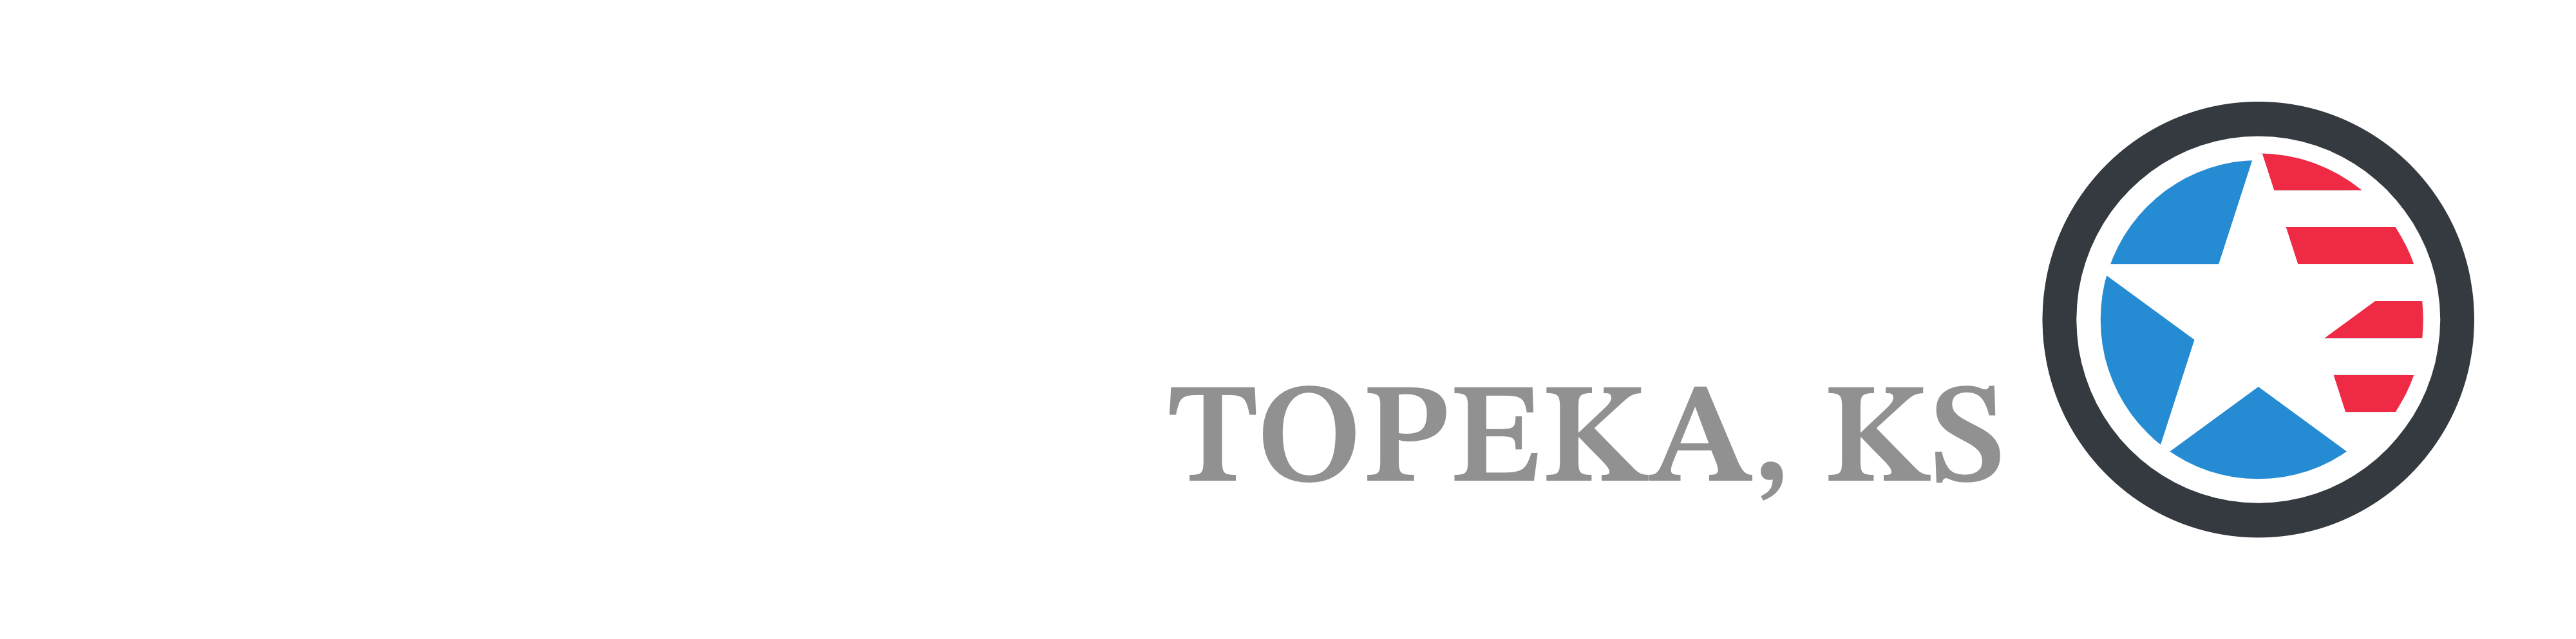 Concrete Contractor Topeka KS